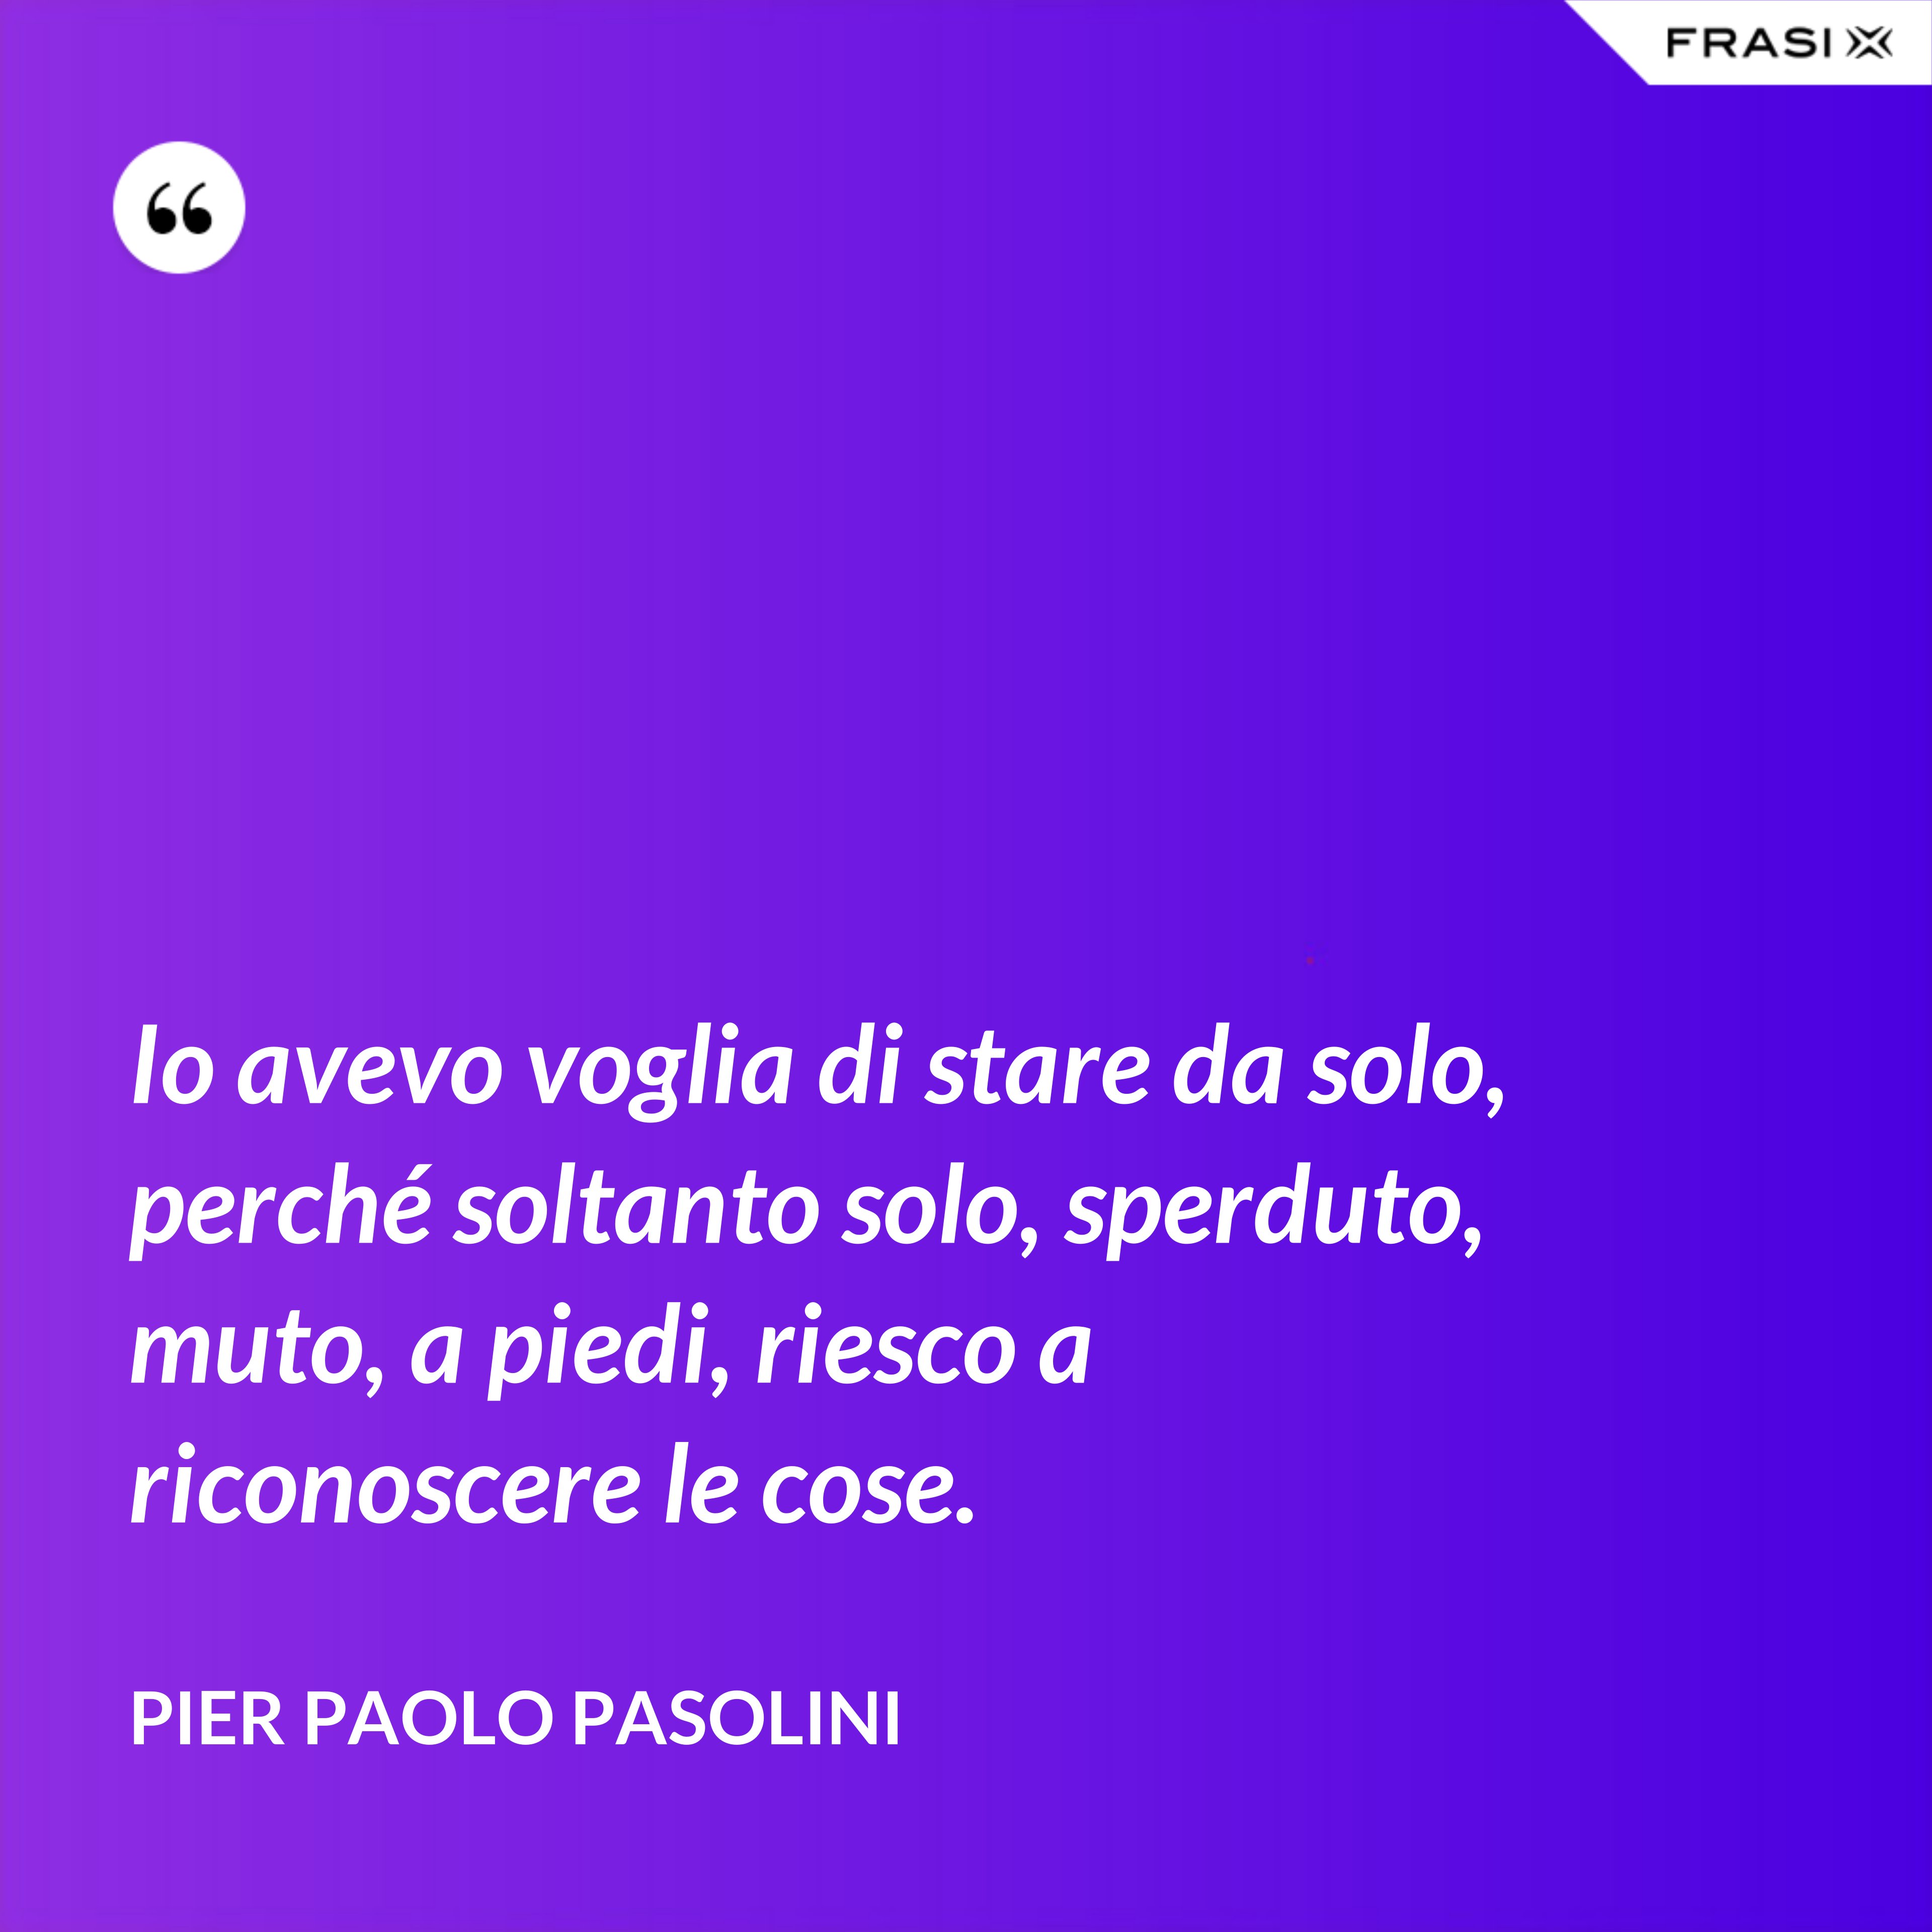 Io avevo voglia di stare da solo, perché soltanto solo, sperduto, muto, a piedi, riesco a riconoscere le cose. - Pier Paolo Pasolini